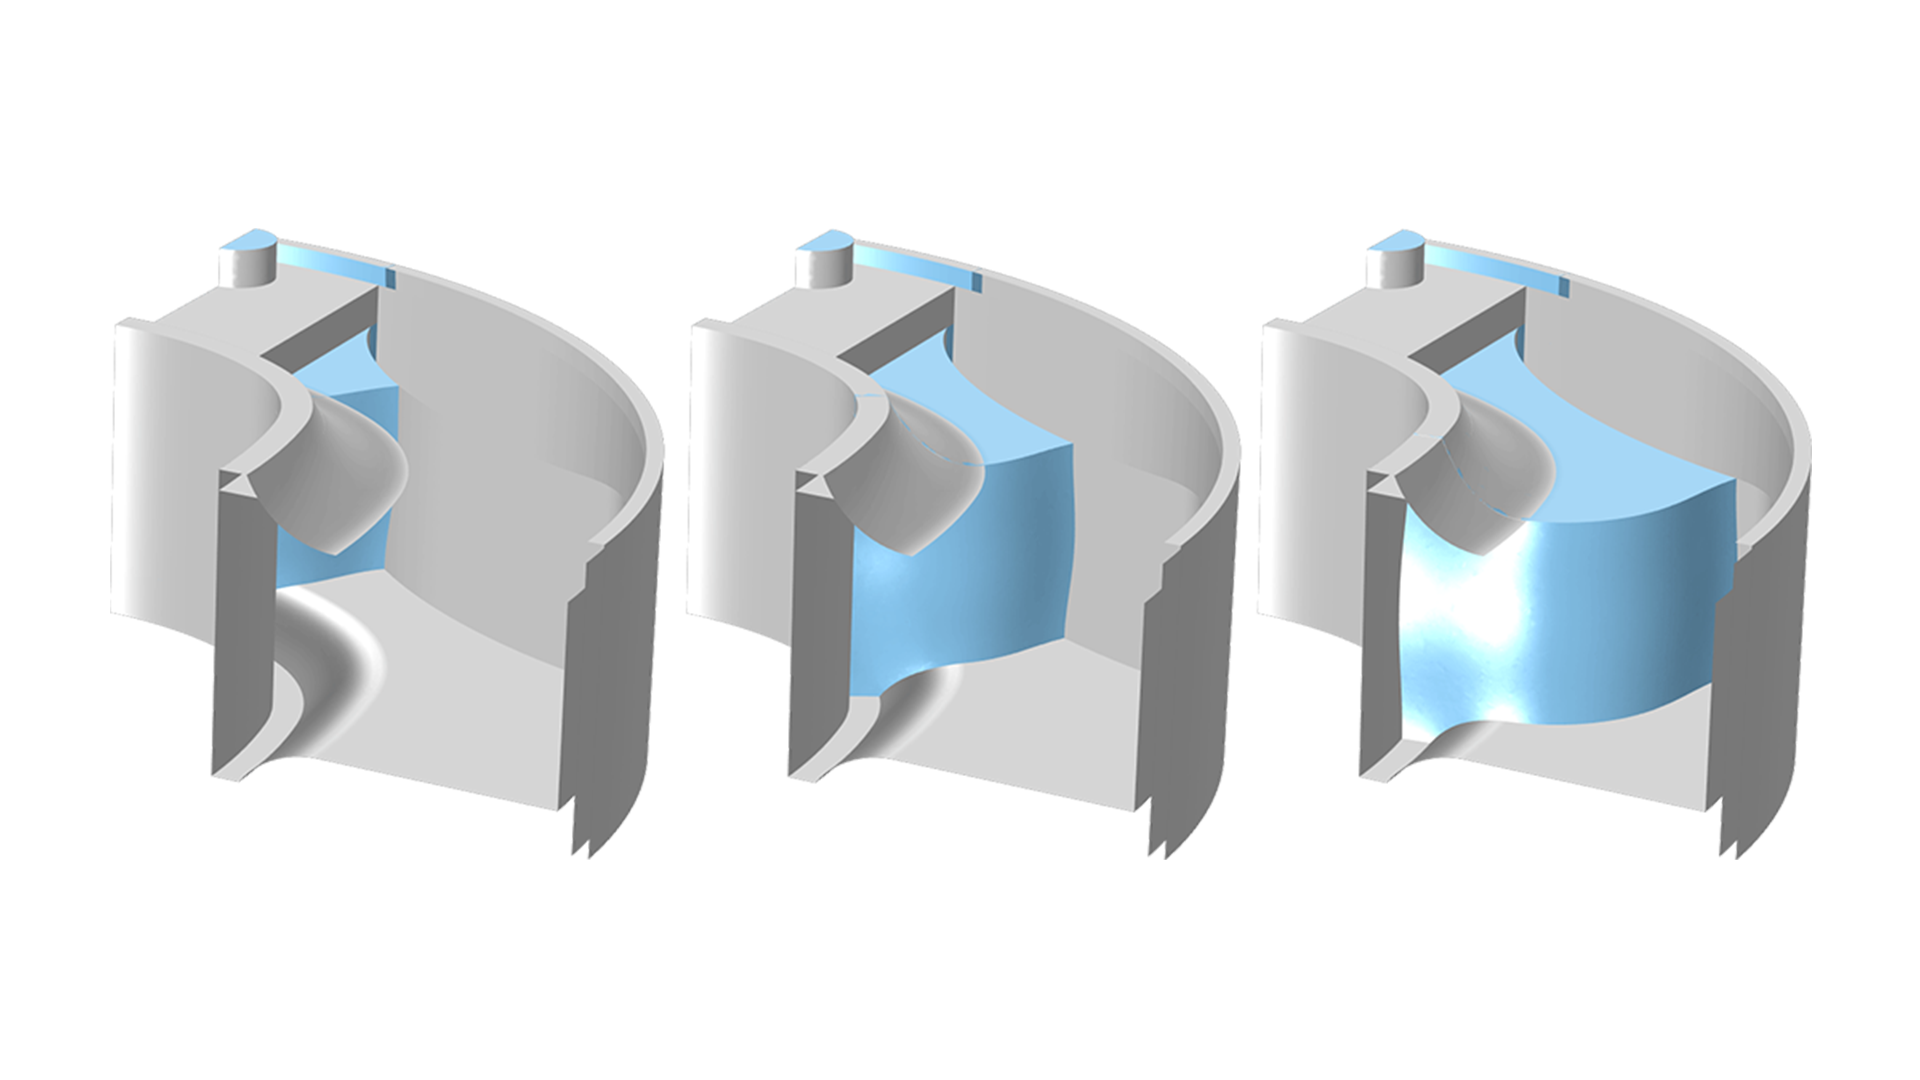 Un modèle de moule montré trois fois avec des quantités croissantes de caoutchouc bleu à l'intérieur, du moins rempli au plus rempli, de gauche à droite.